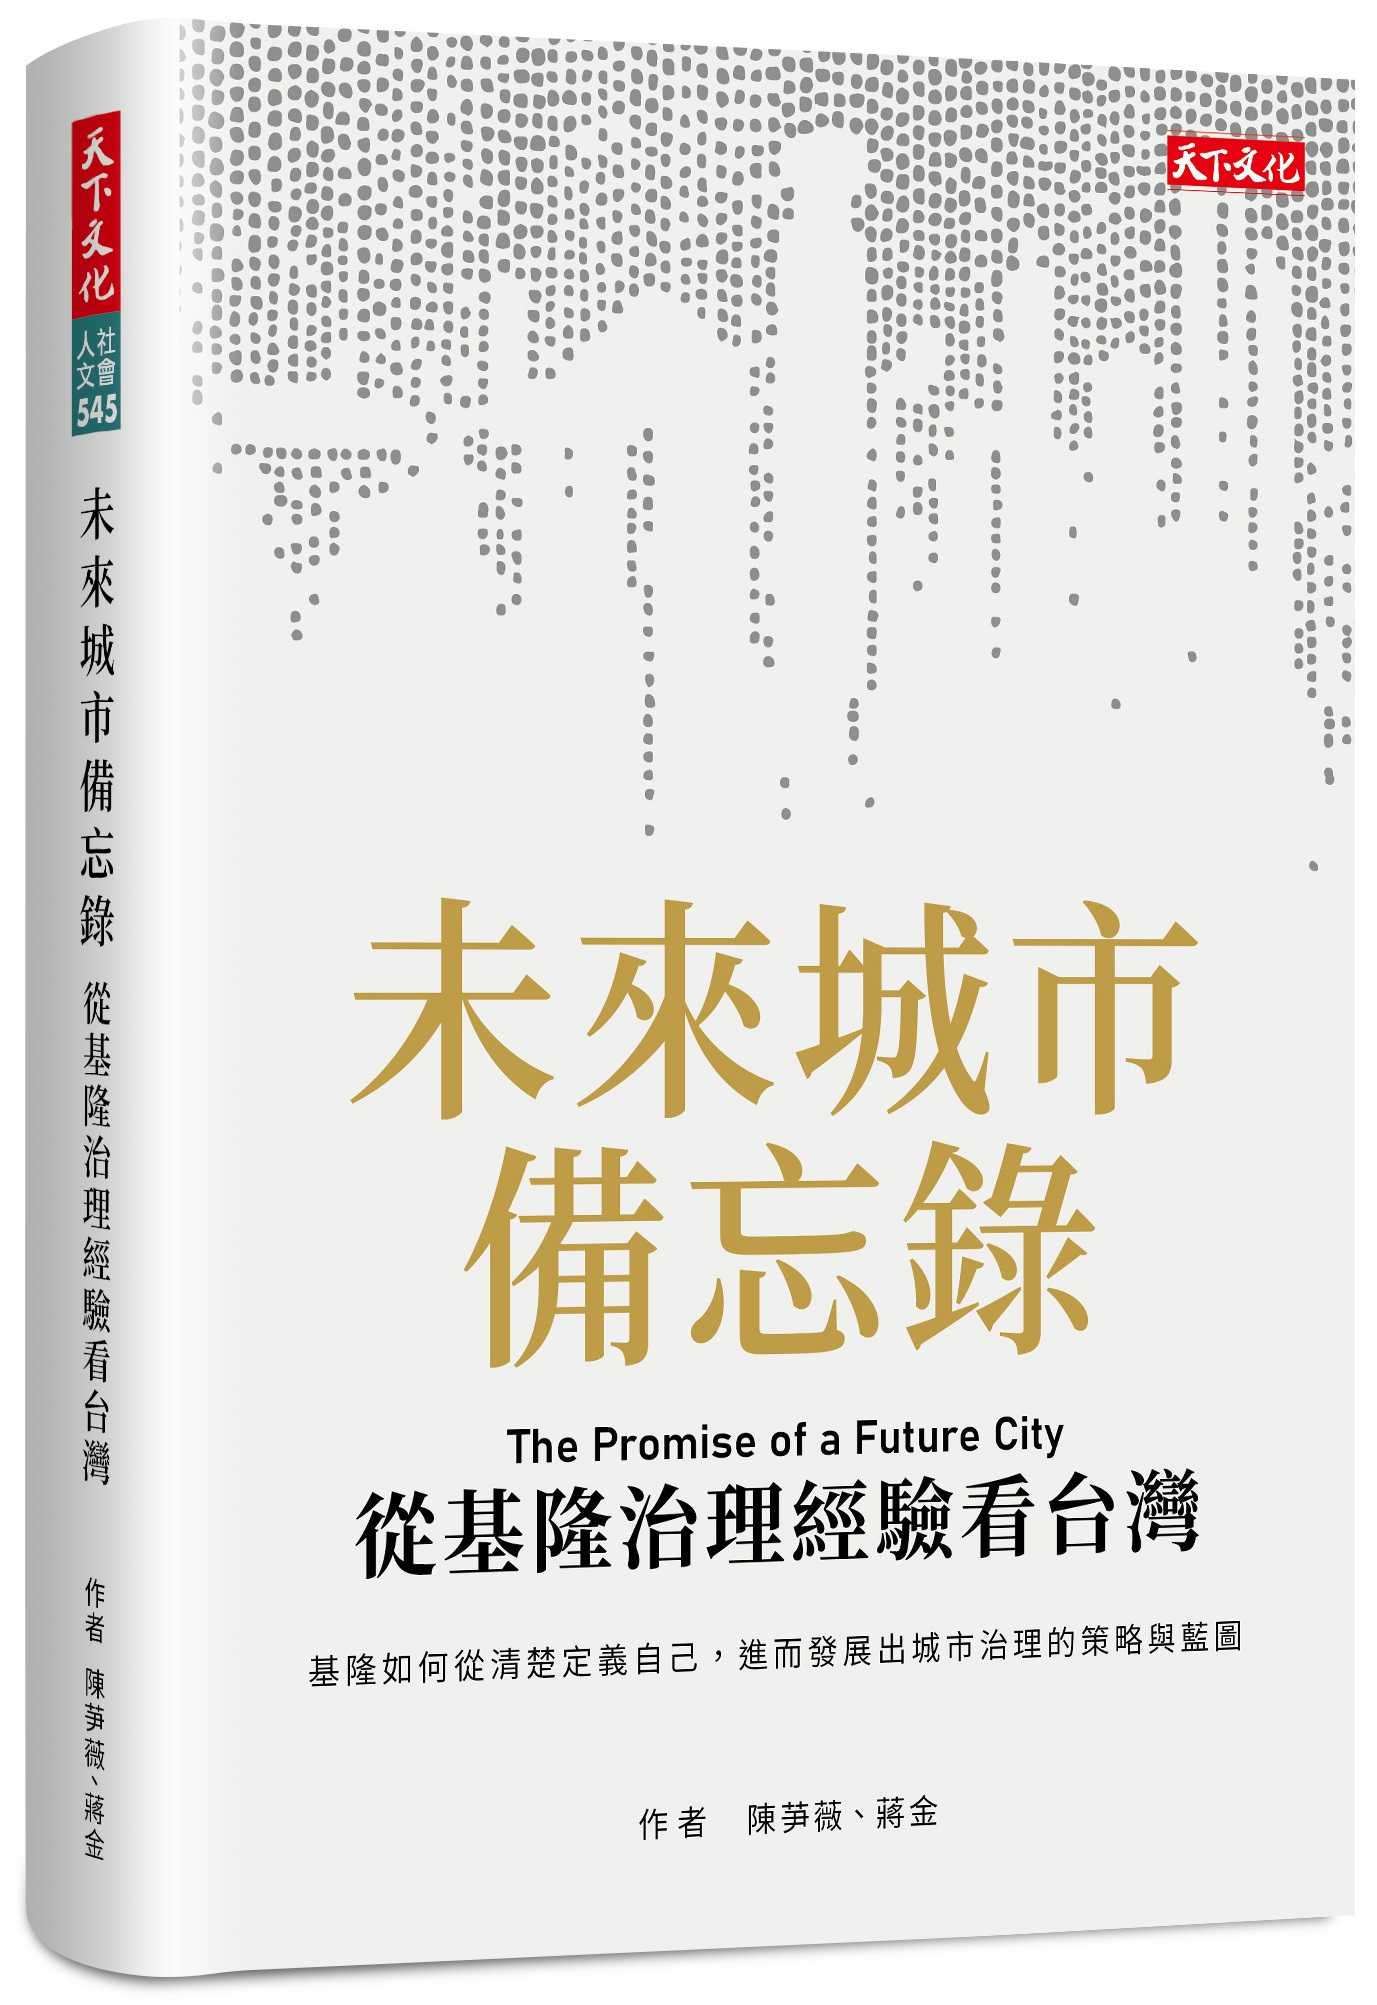 【天下文化】未來城市備忘錄:從基隆治理經驗看台灣